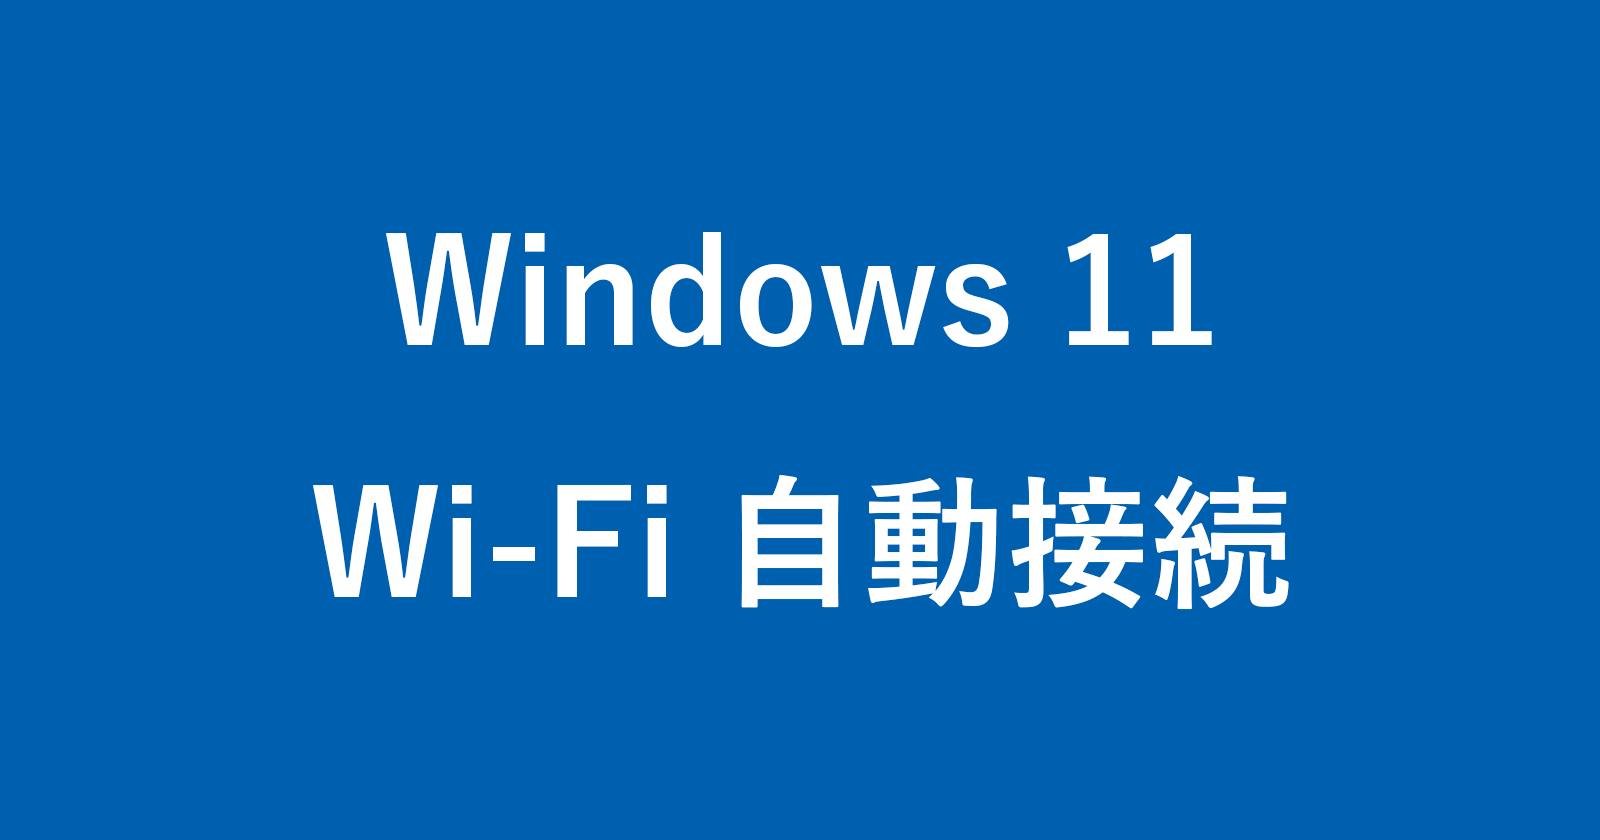 windows 11 wi fi auto connect